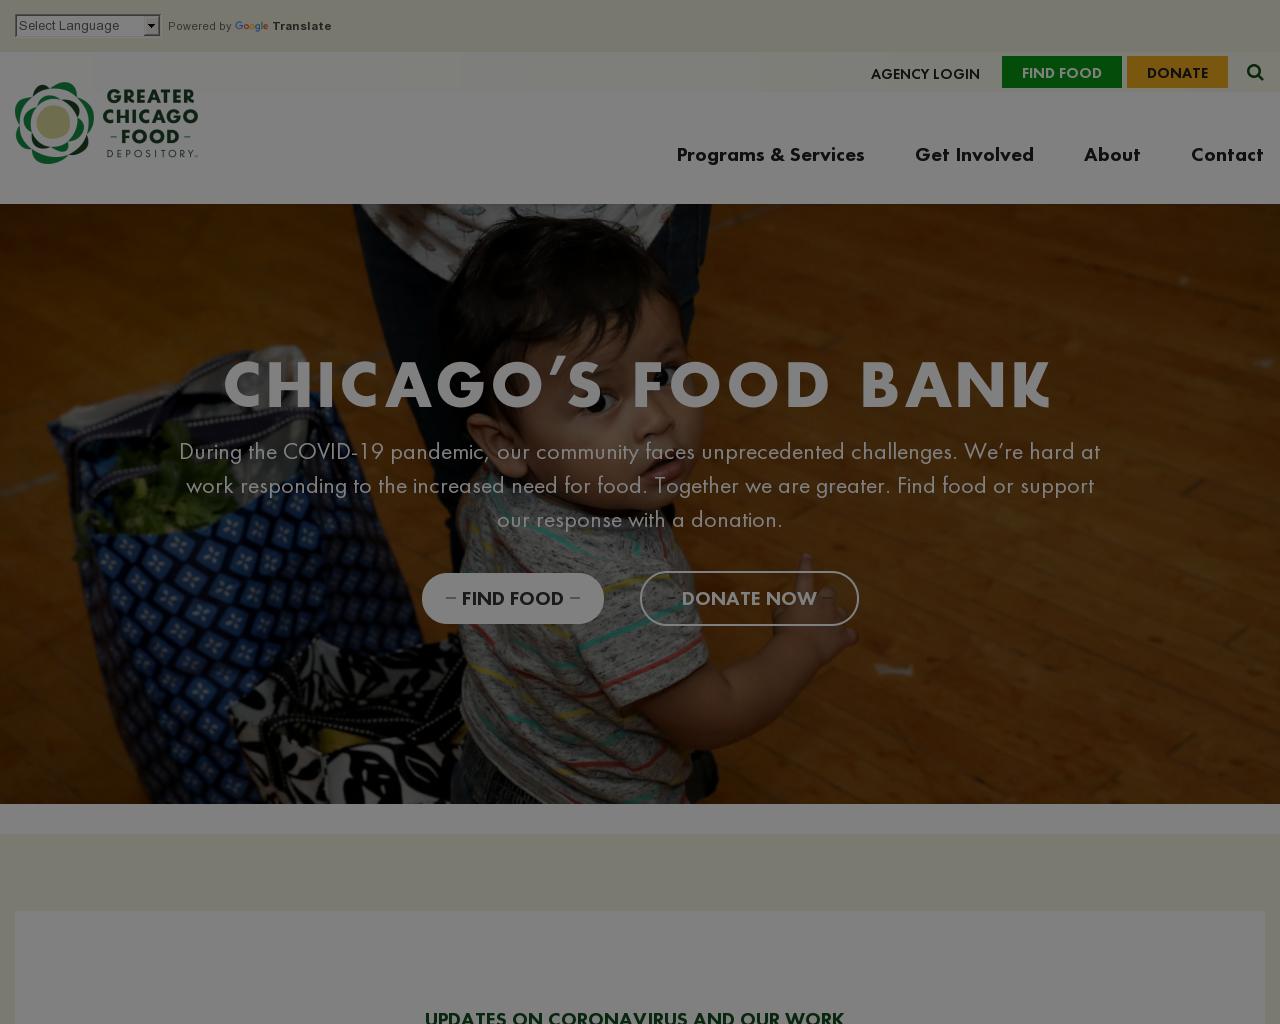 chicagosfoodbank.org